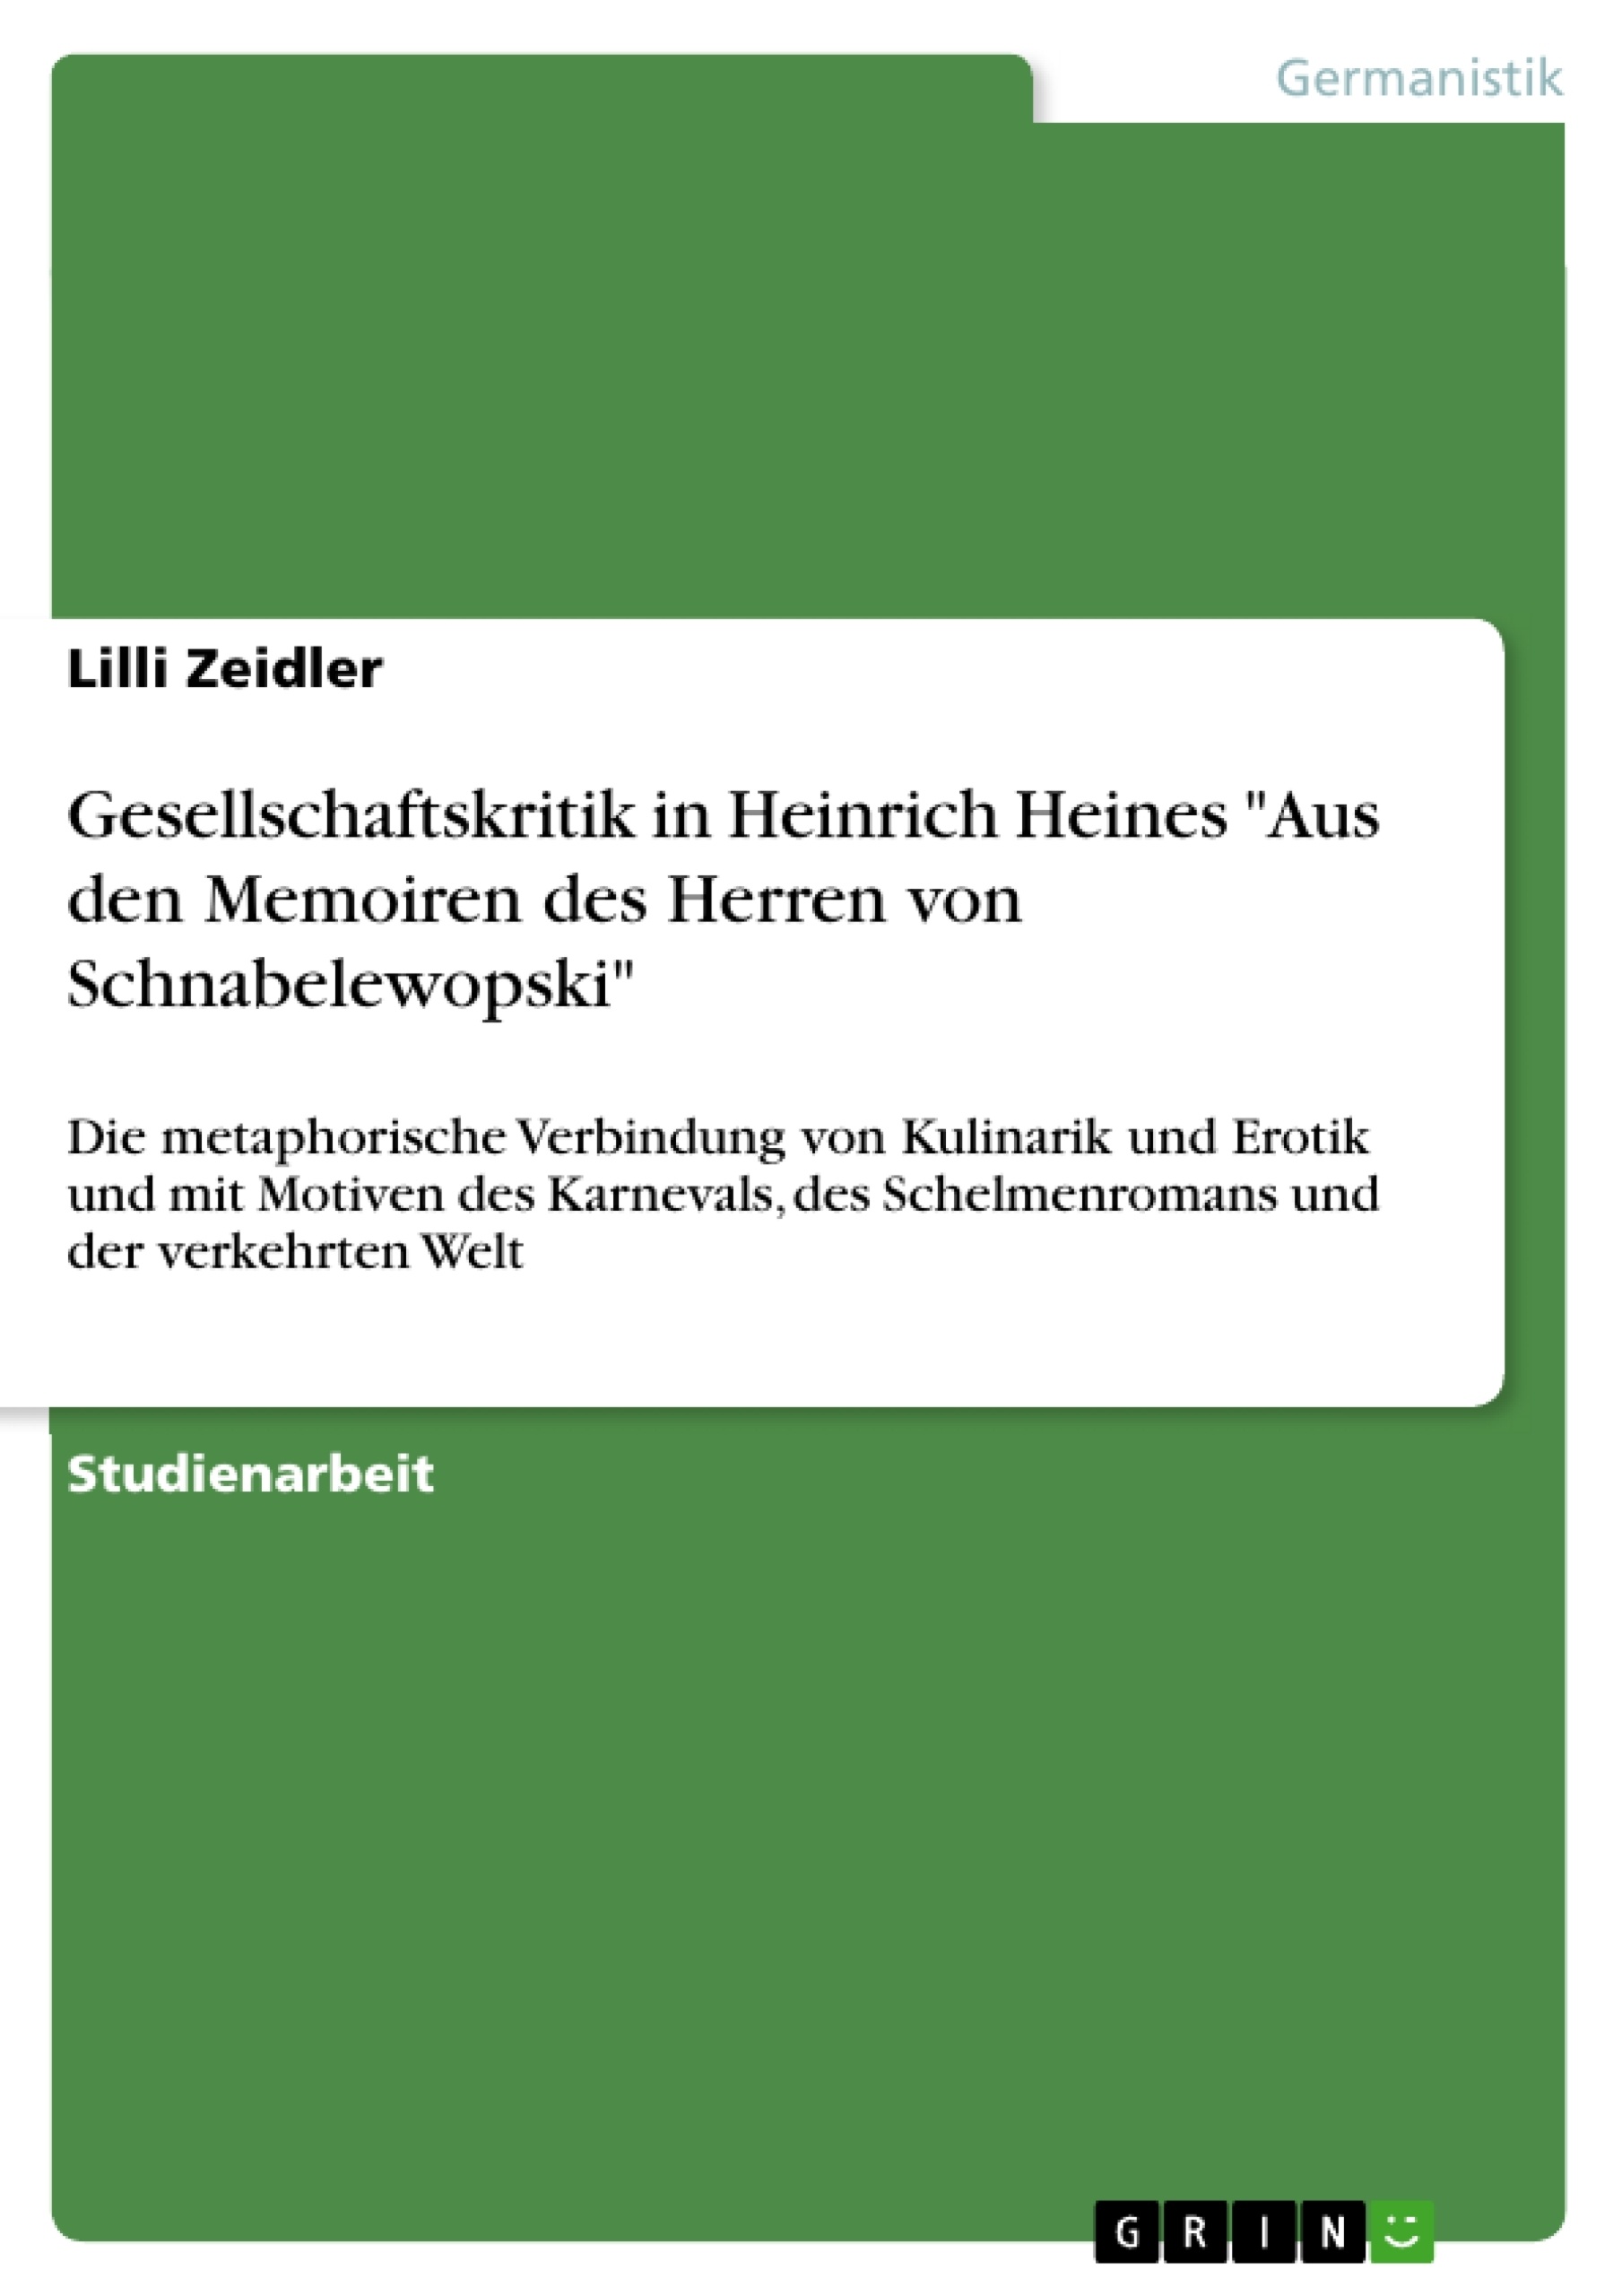 Título: Gesellschaftskritik in Heinrich Heines "Aus den Memoiren des Herren von Schnabelewopski"